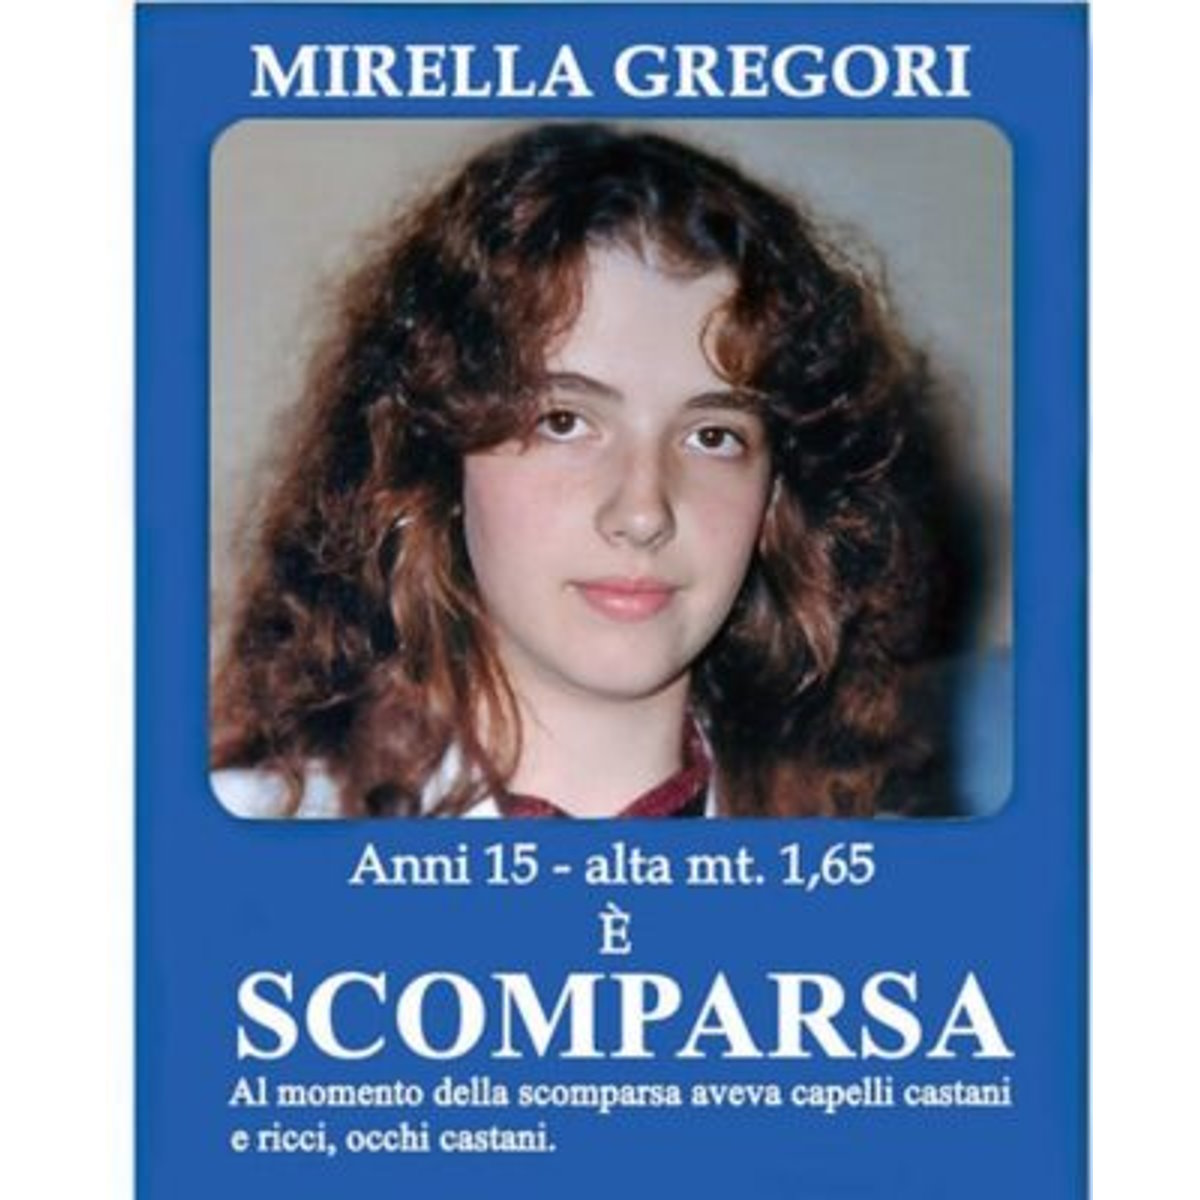 Mirella Gregori: inaugura la prima puntata di Diritto di cronaca 3.0 su M10TV